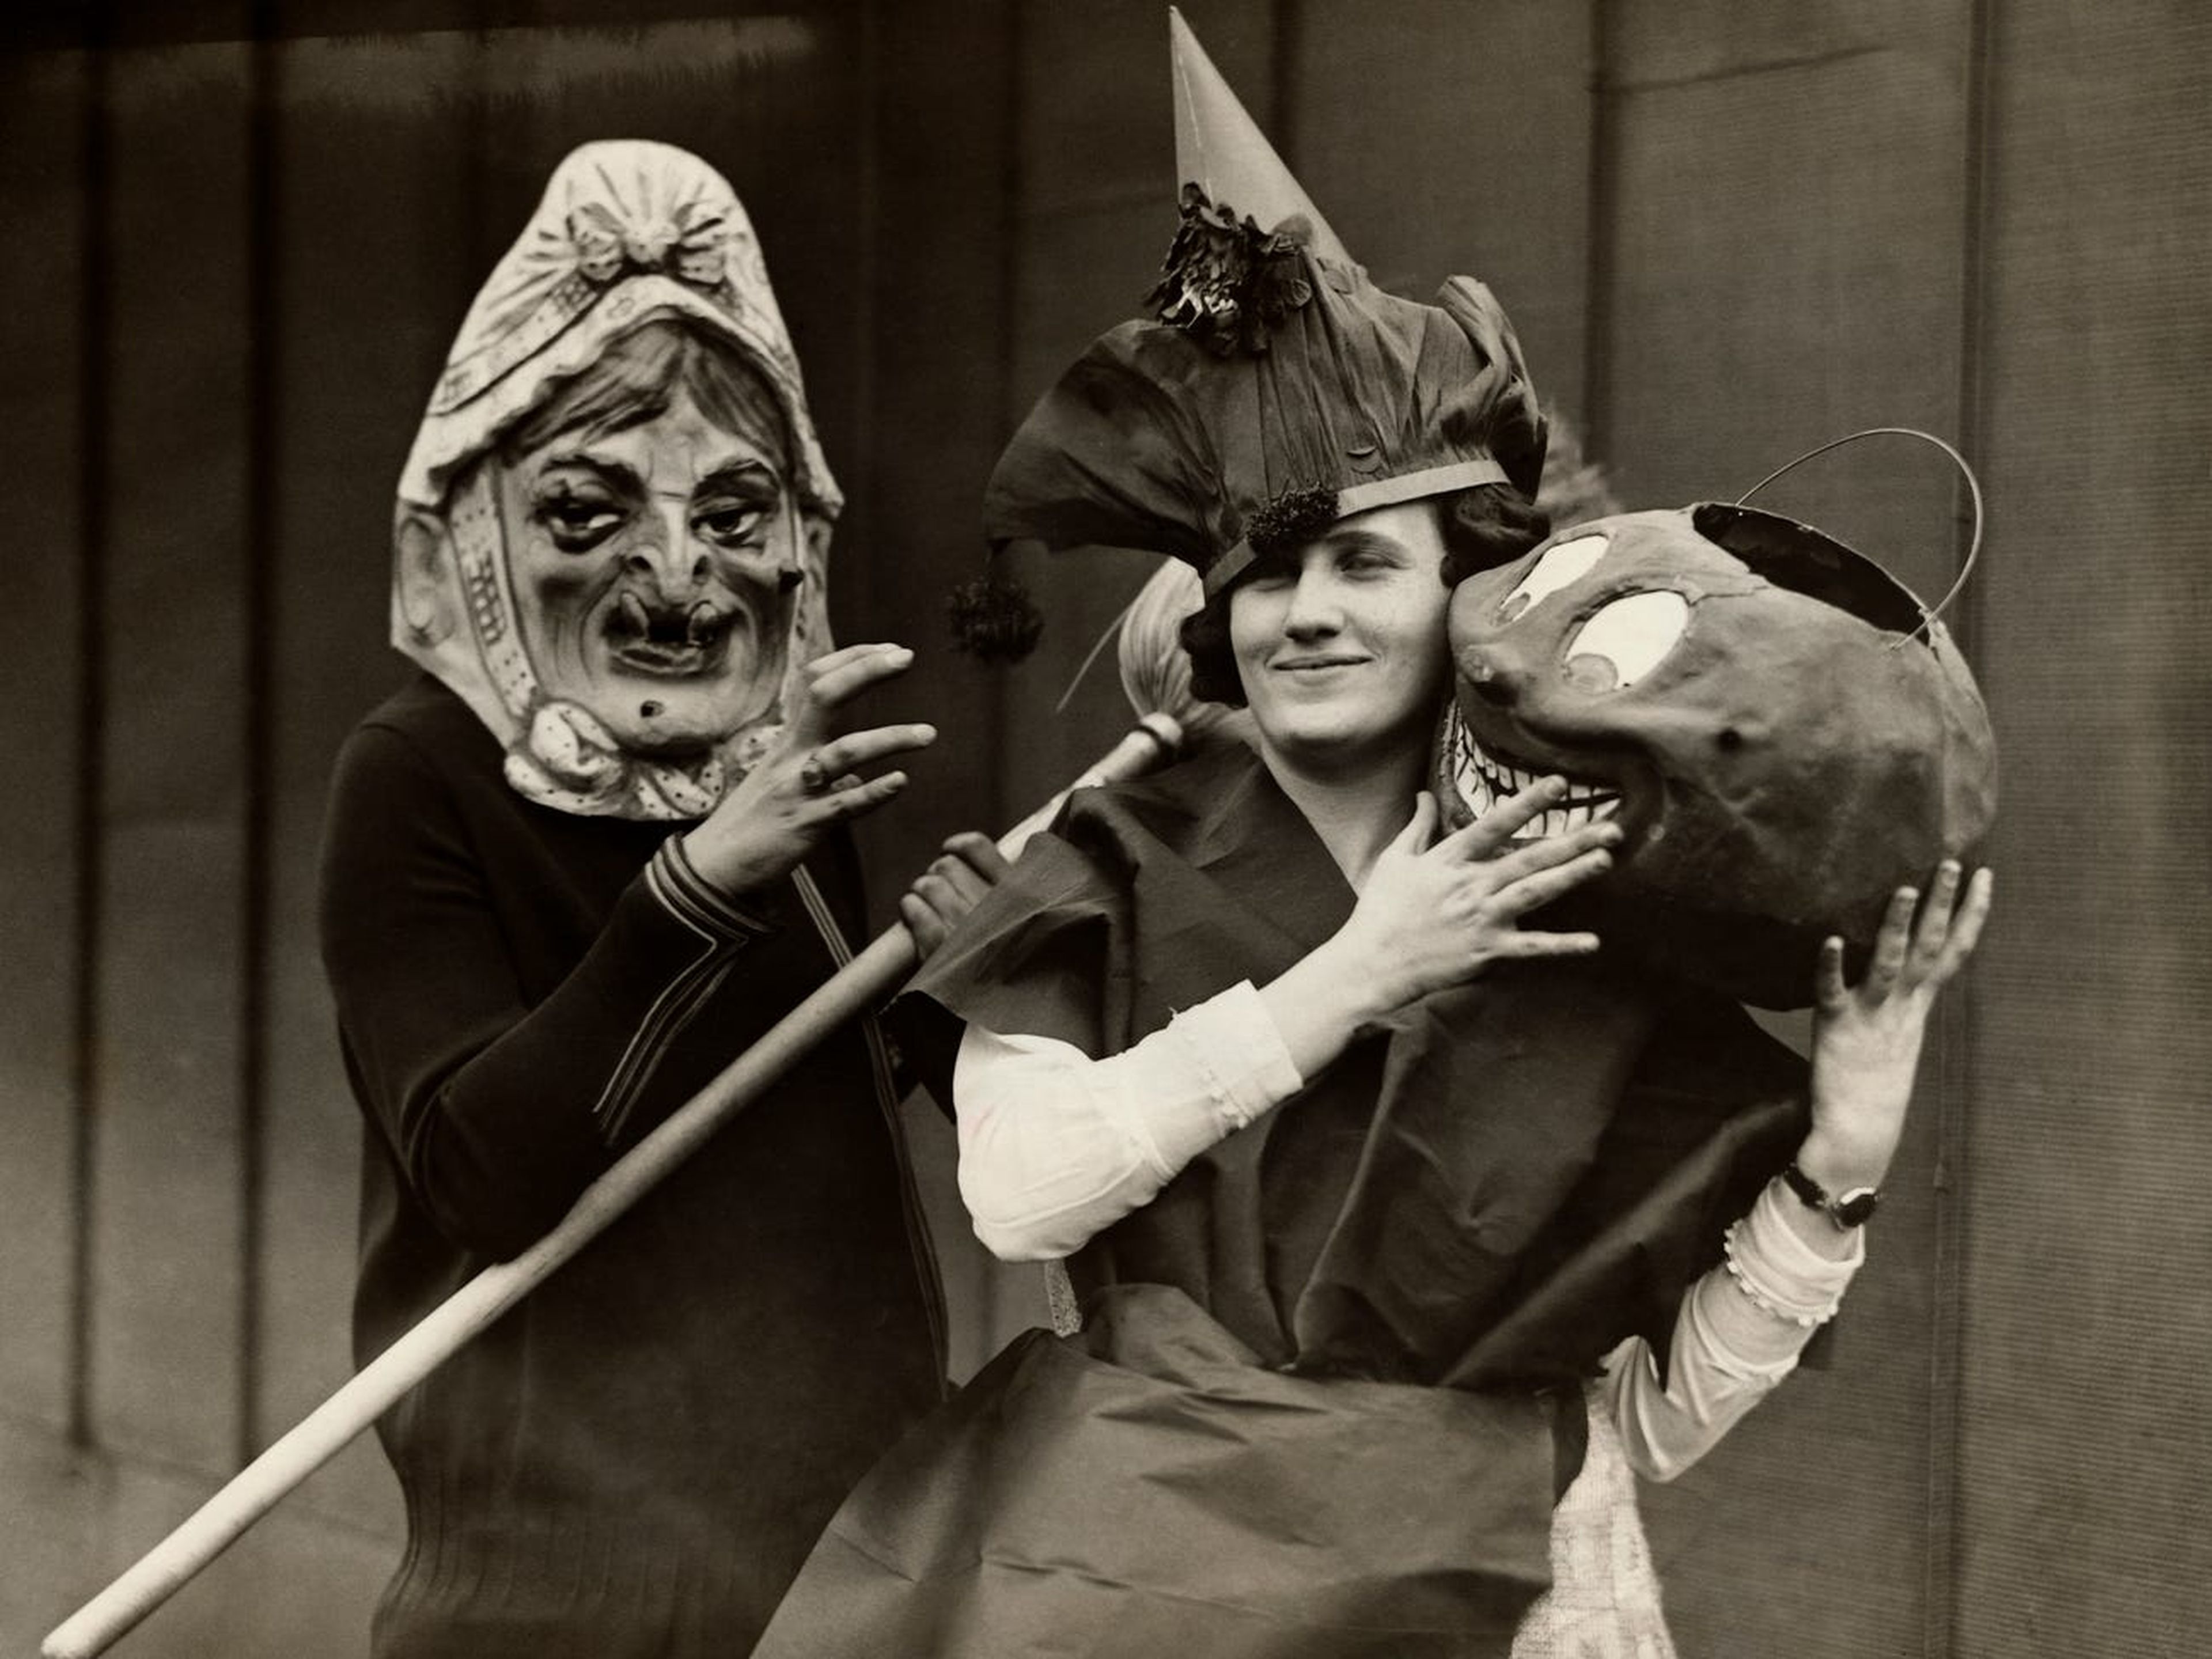 Mujeres de la época disfrazadas para Halloween.